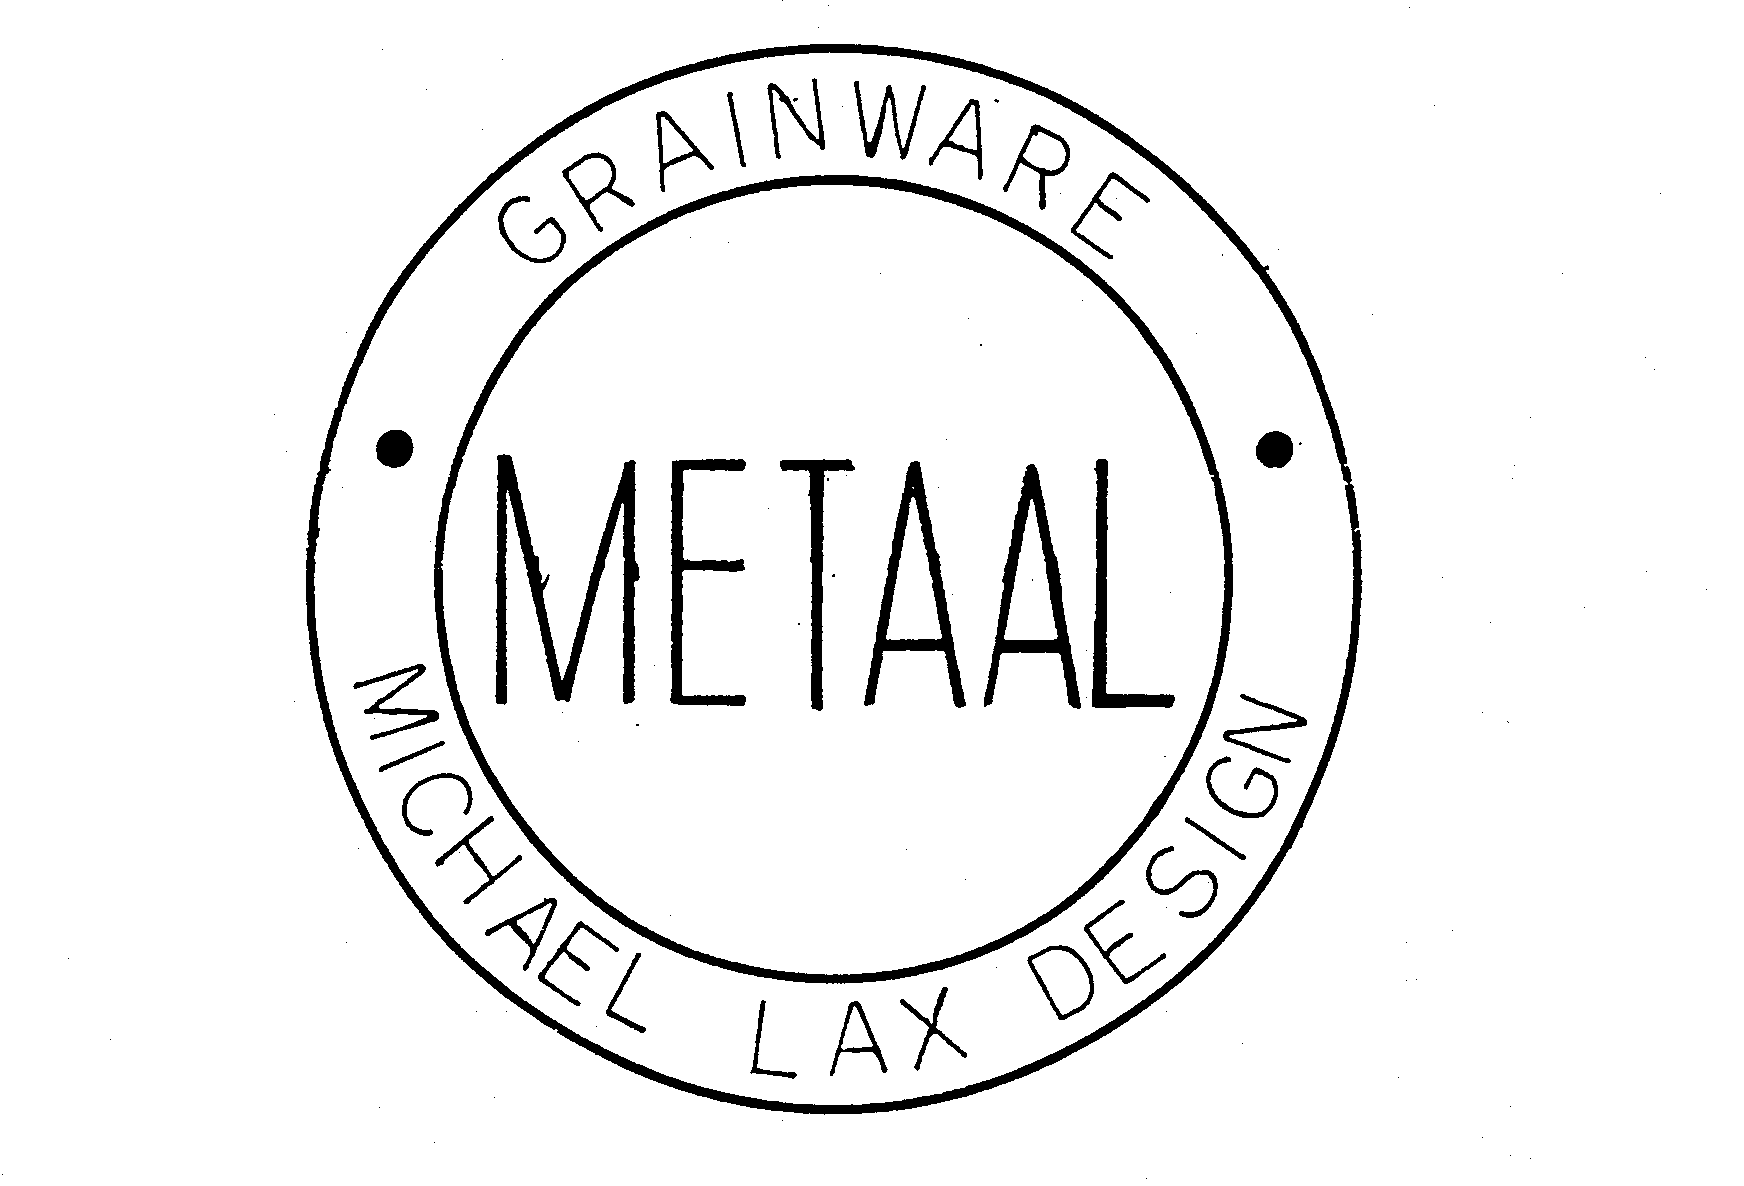  GRAINWARE METAAL MICHAEL LAX DESIGN